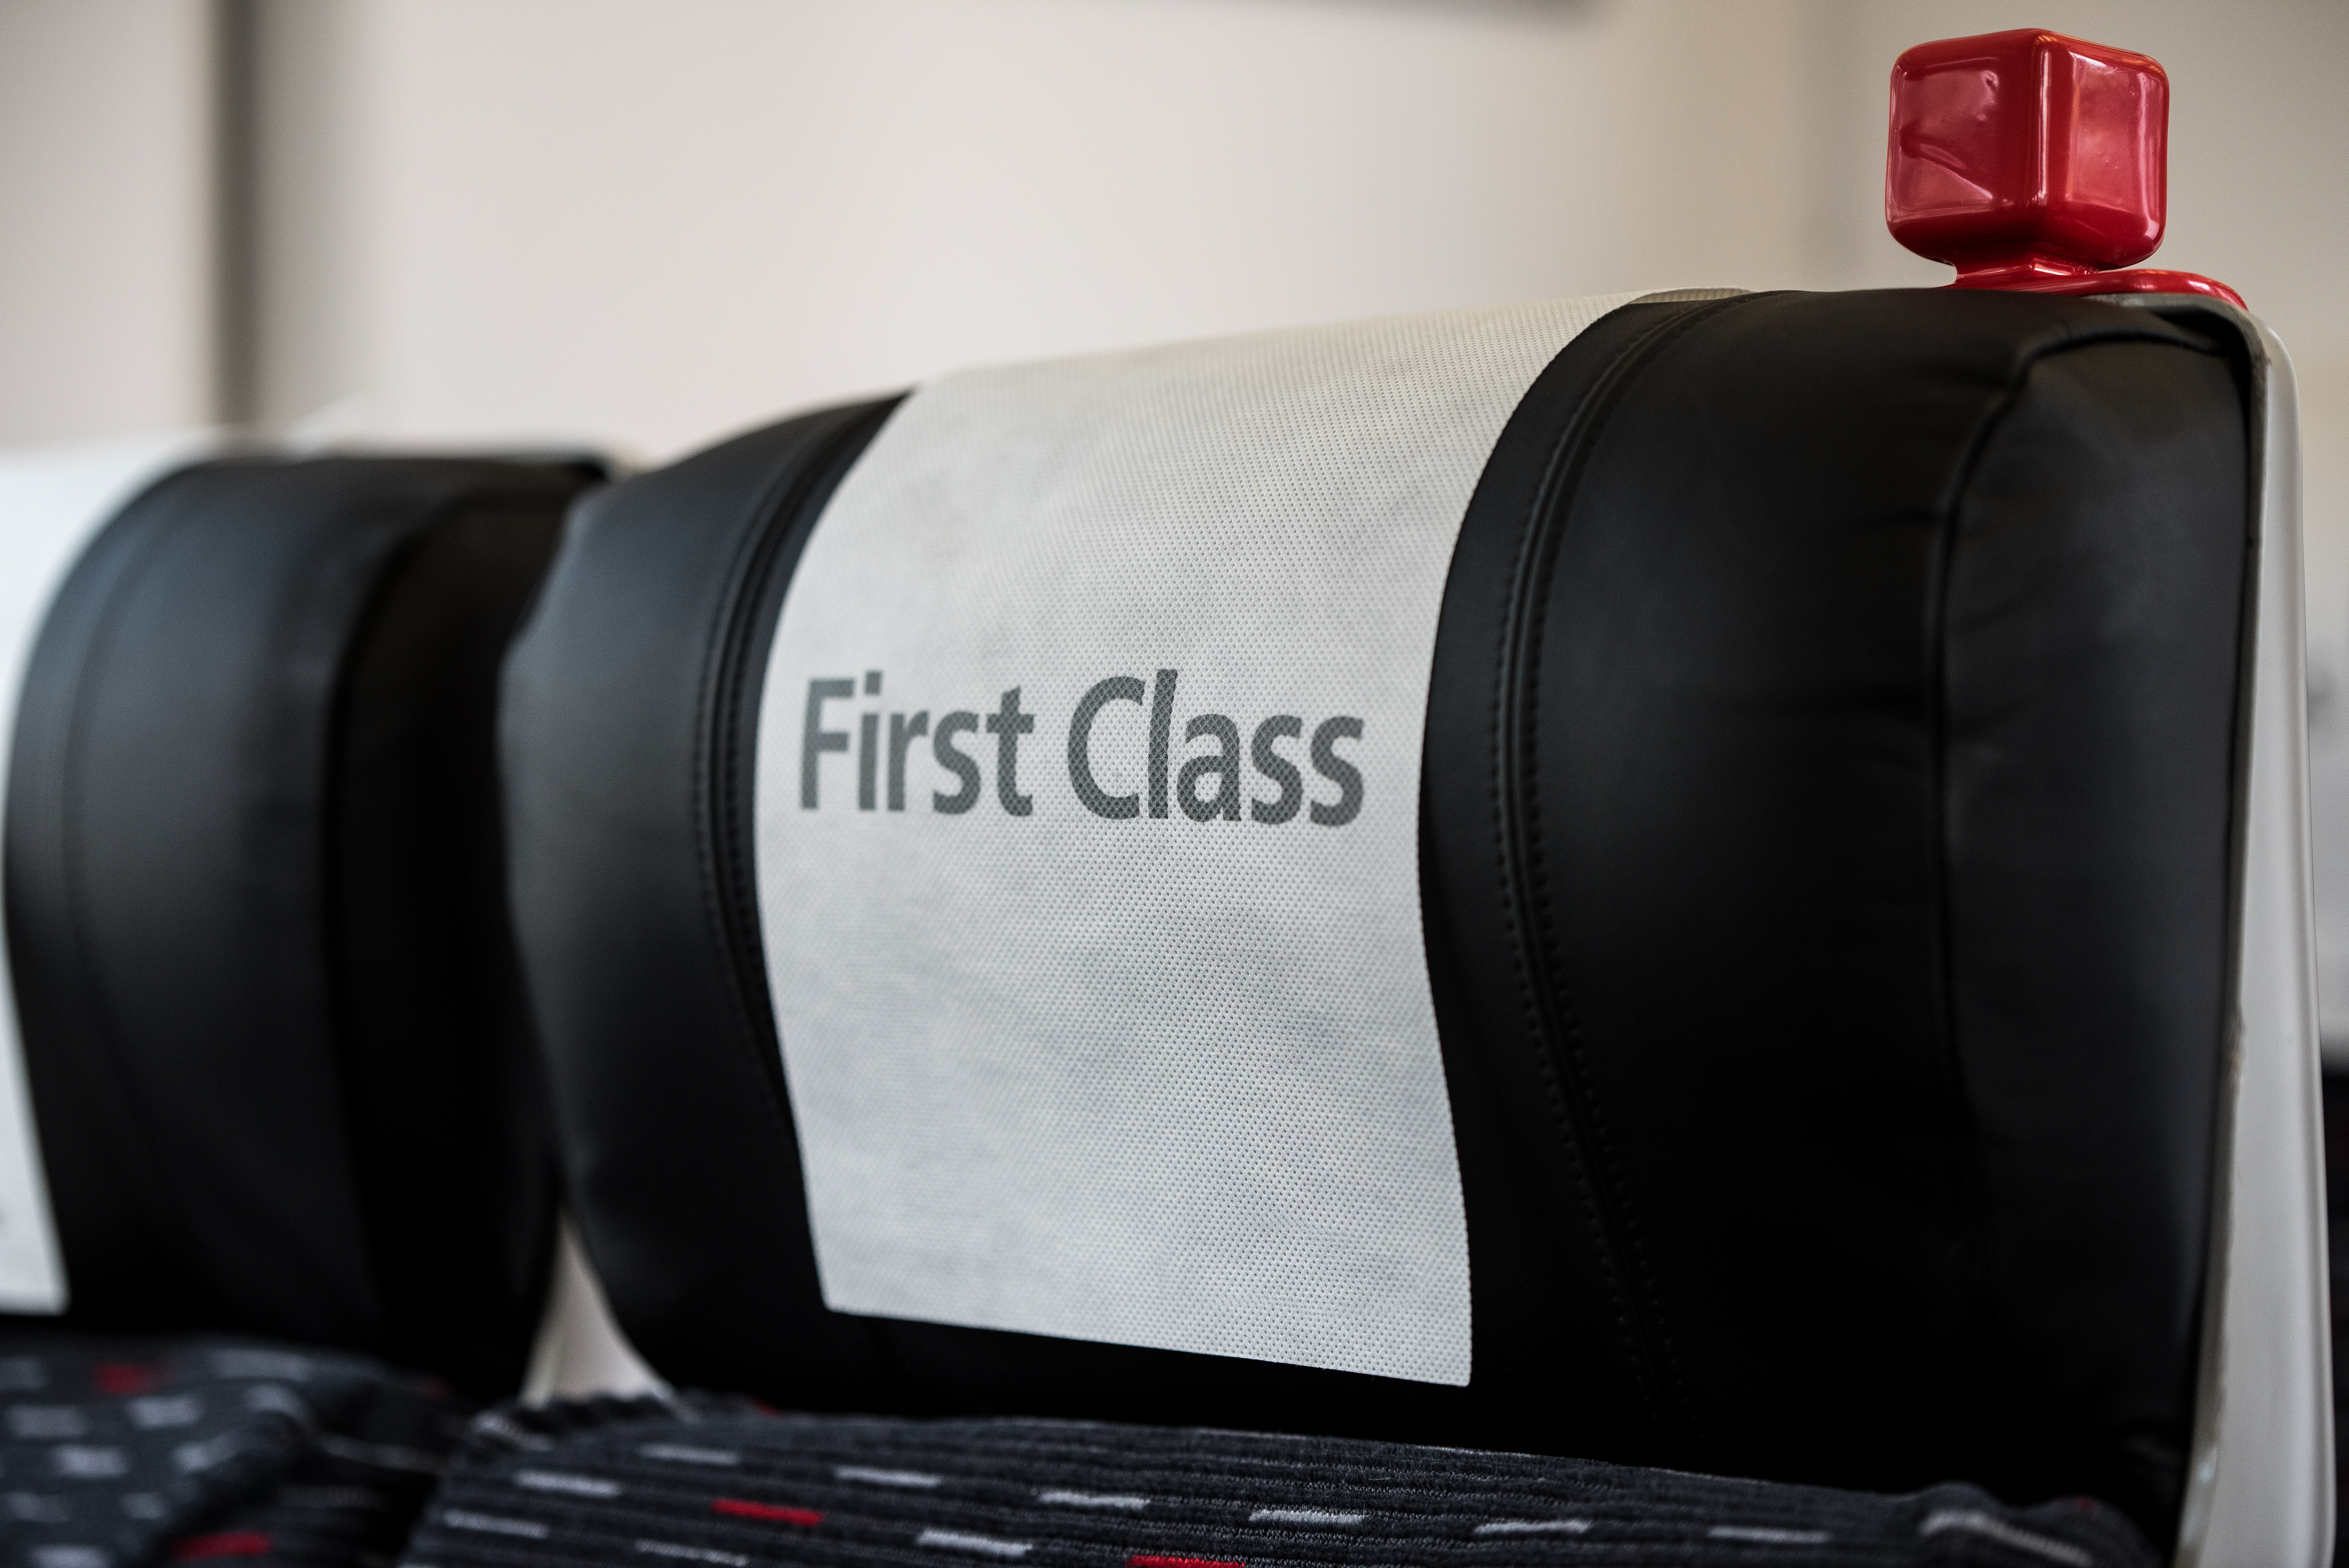 Un siège de train avec un panneau indiquant "première classe" | Source : Shutterstock